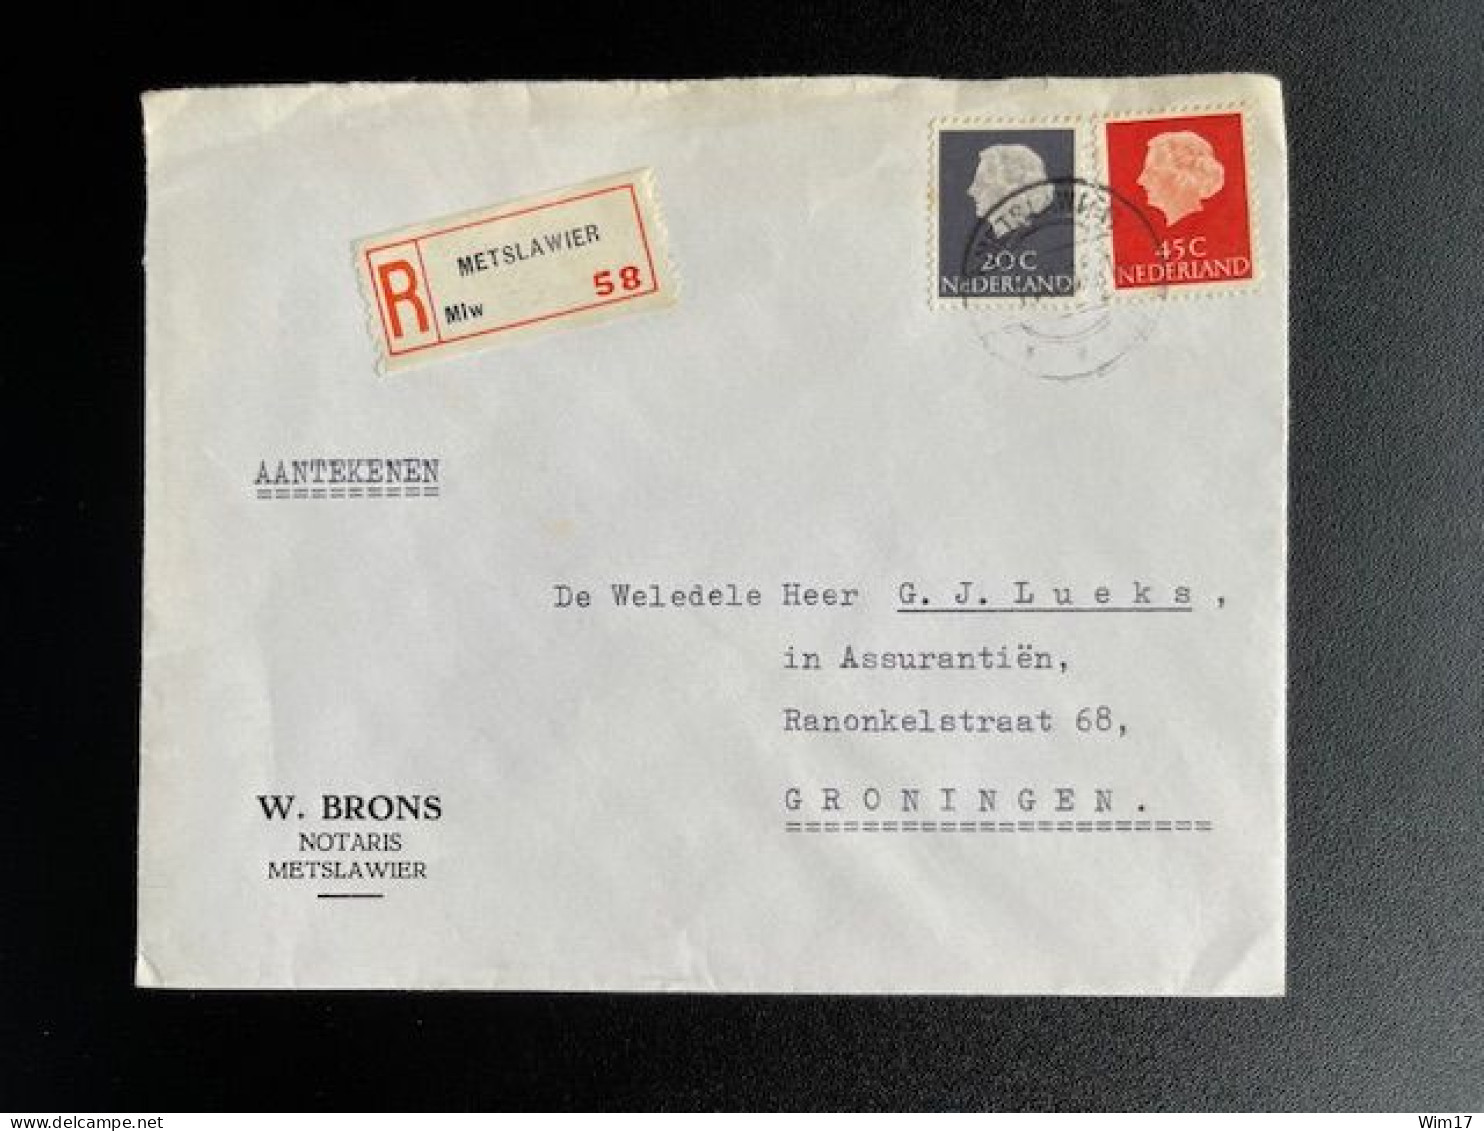 NETHERLANDS 1966 REGISTERED LETTER METSLAWIER TO GRONINGEN 01-11-1966 NEDERLAND AANGETEKEND - Lettres & Documents